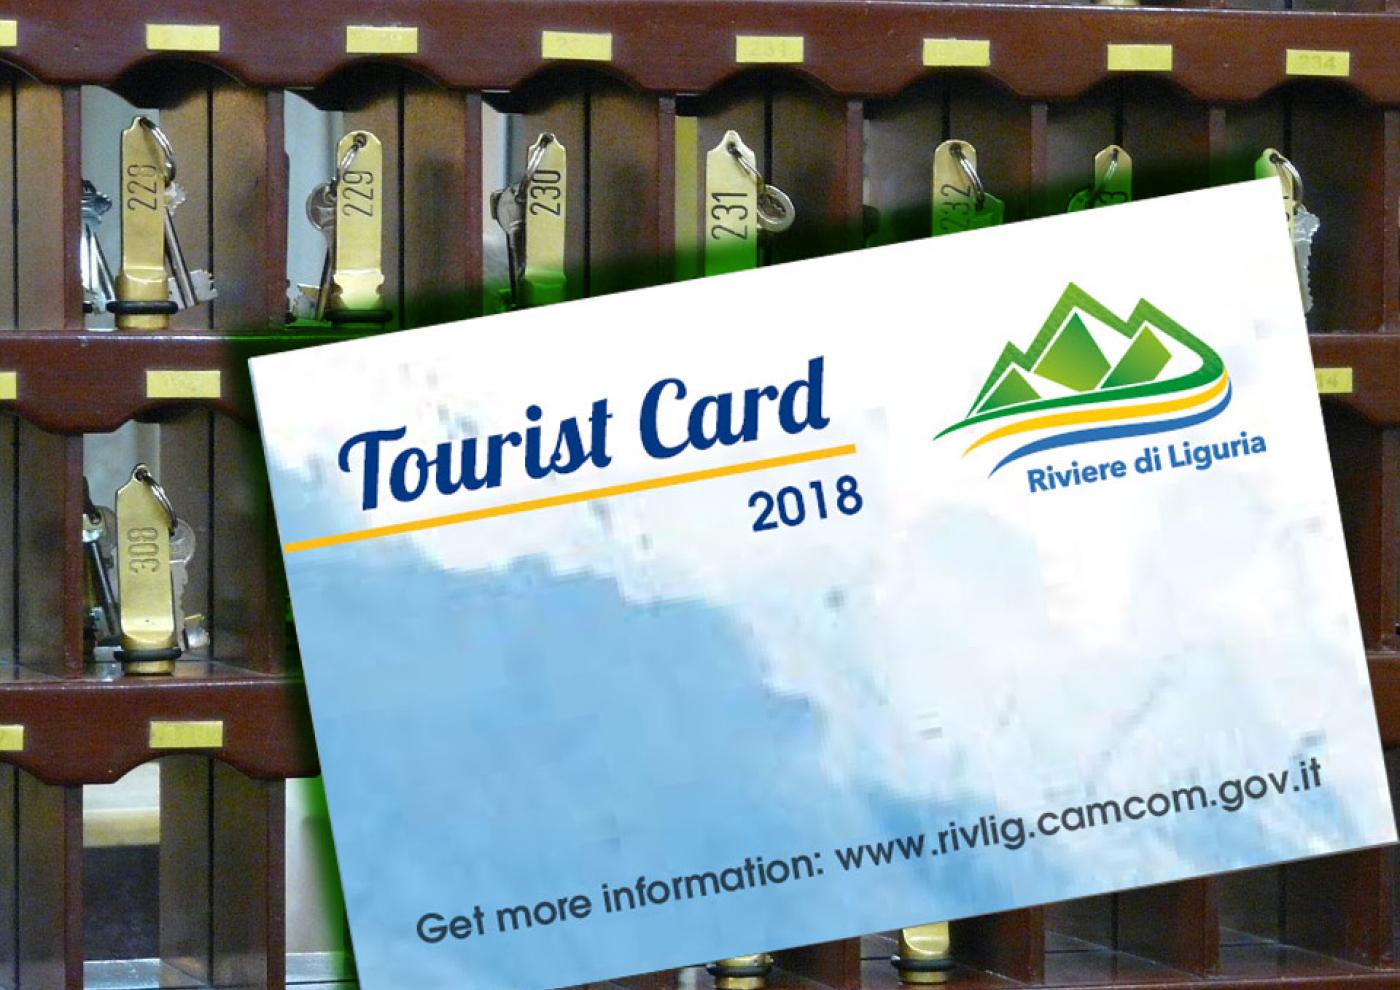 Card Turistica e Imposta di Soggiorno